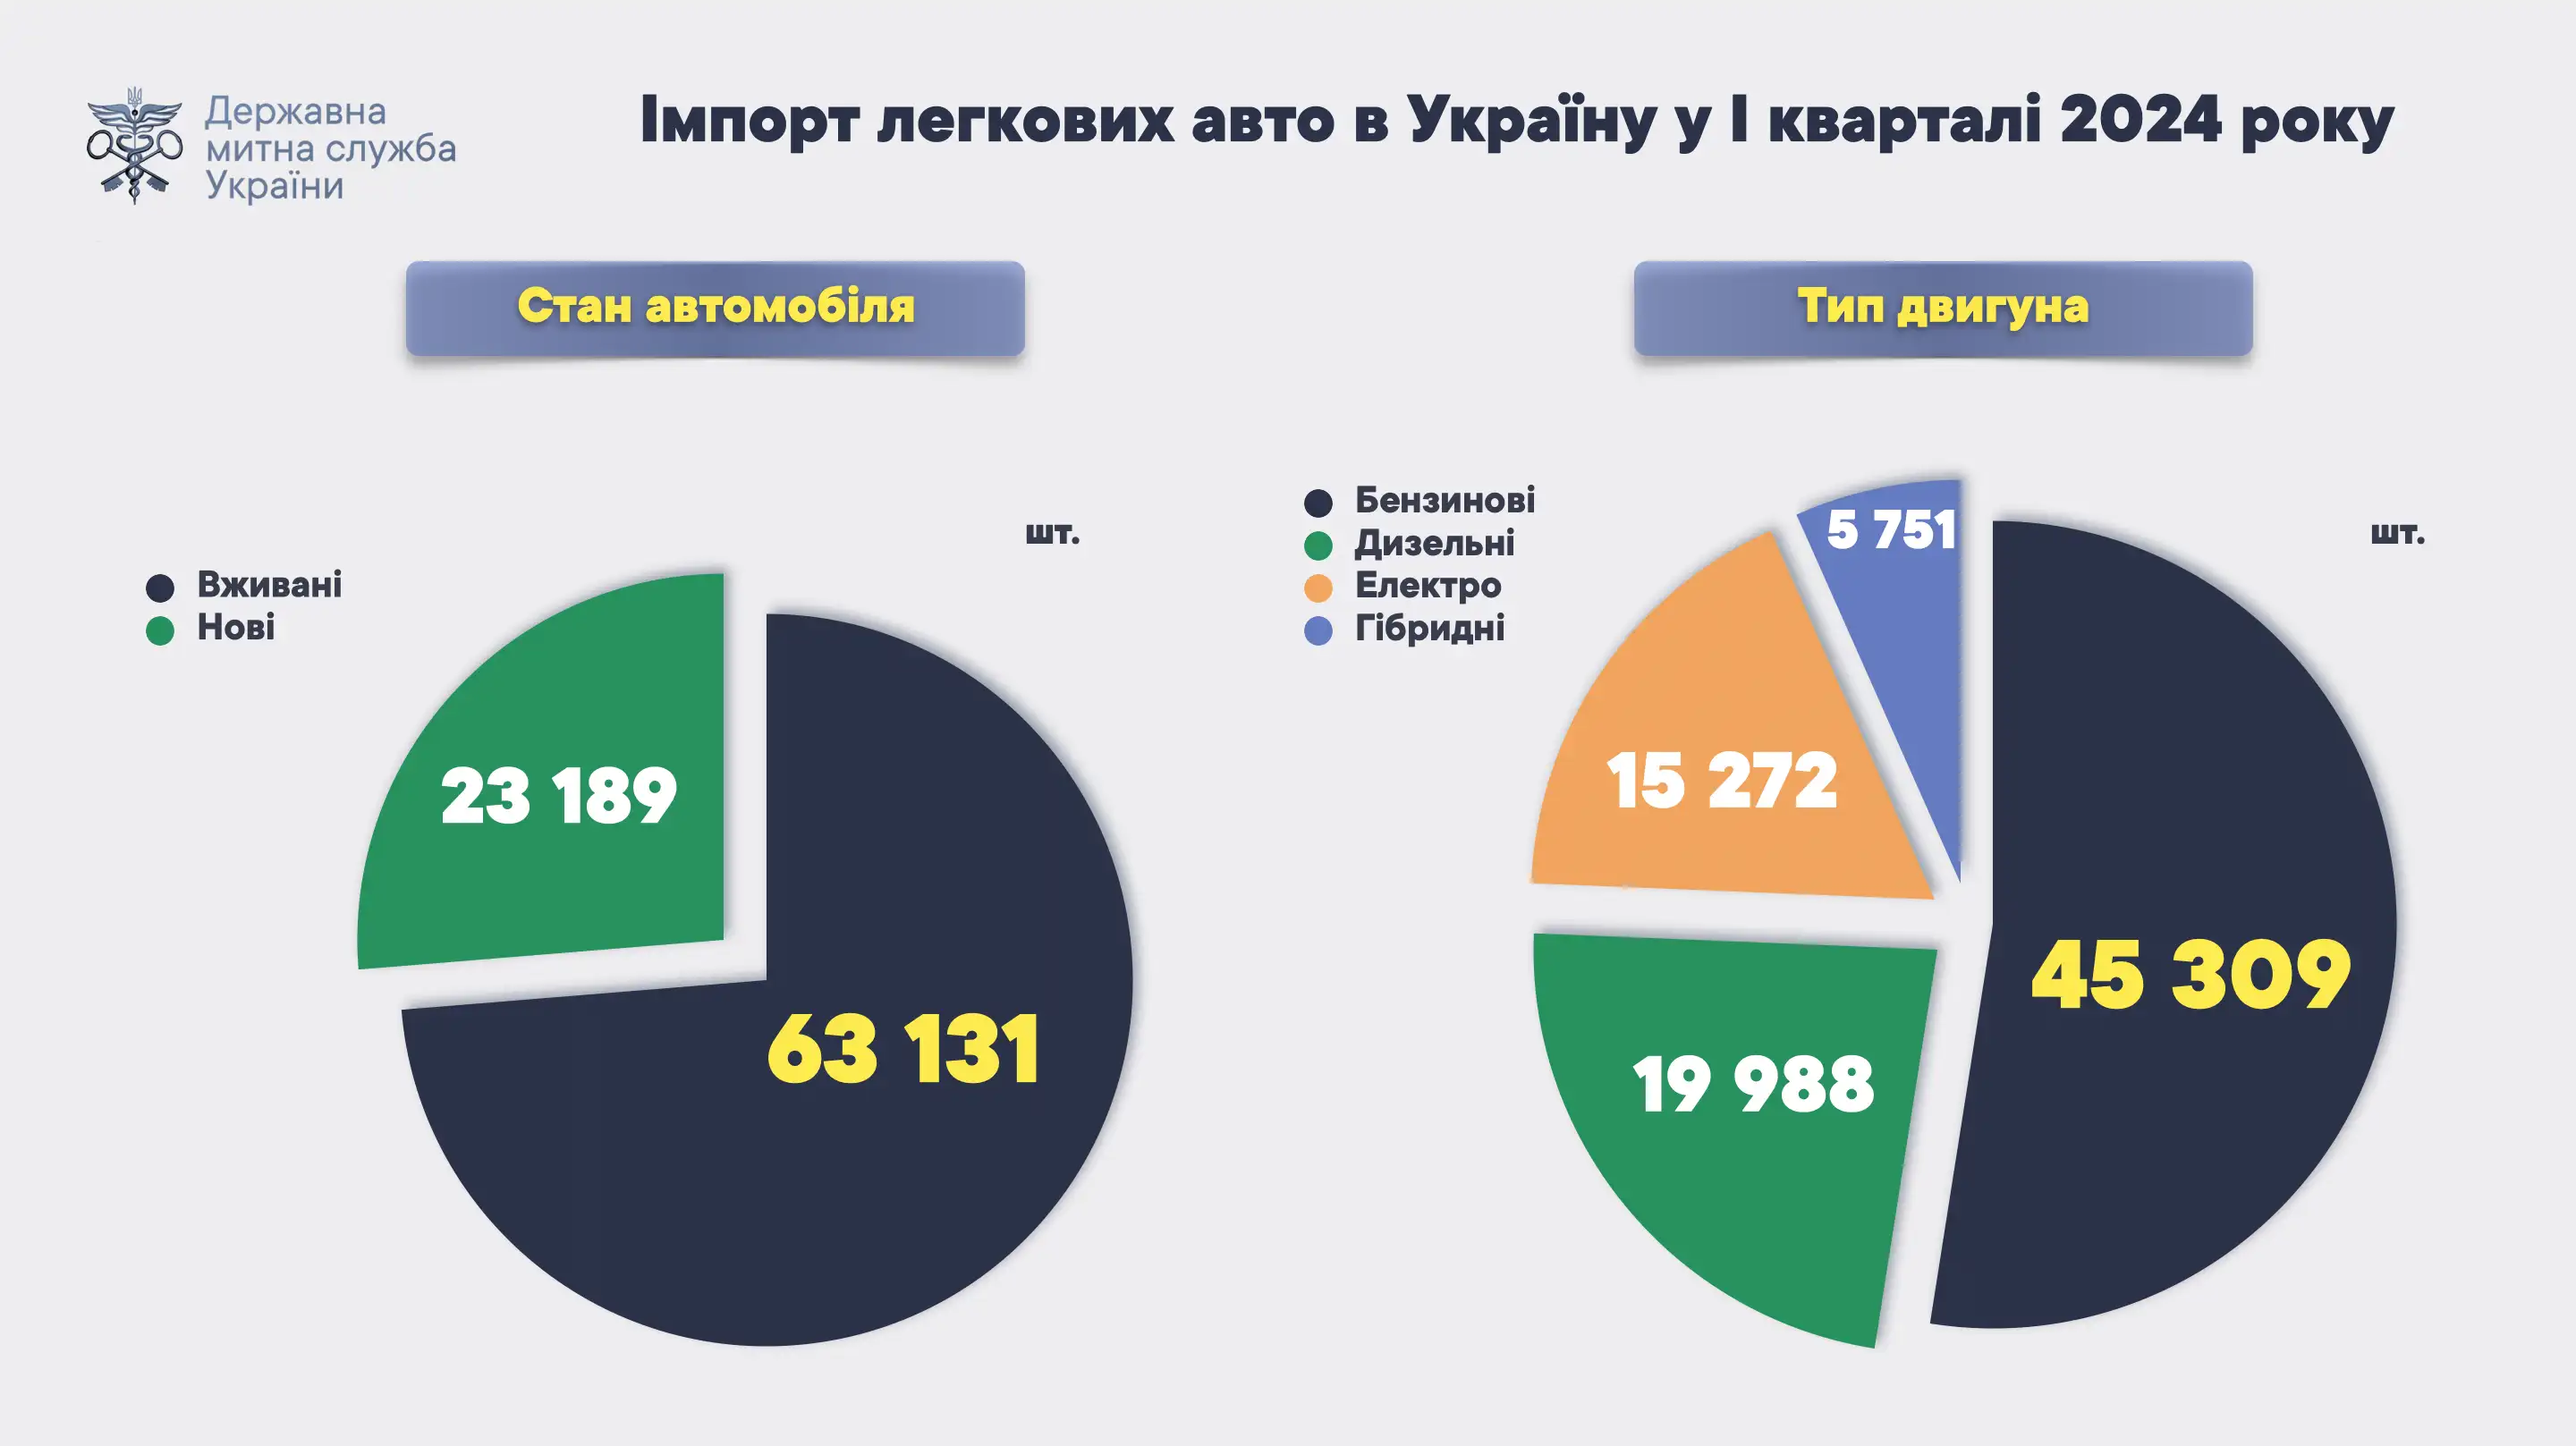 В I квартале 2024 года в Украину завезли 63,1 тыс. подержанных легковых автомобилей (73% от общего количества) и 23,2 тыс. новых (27%).